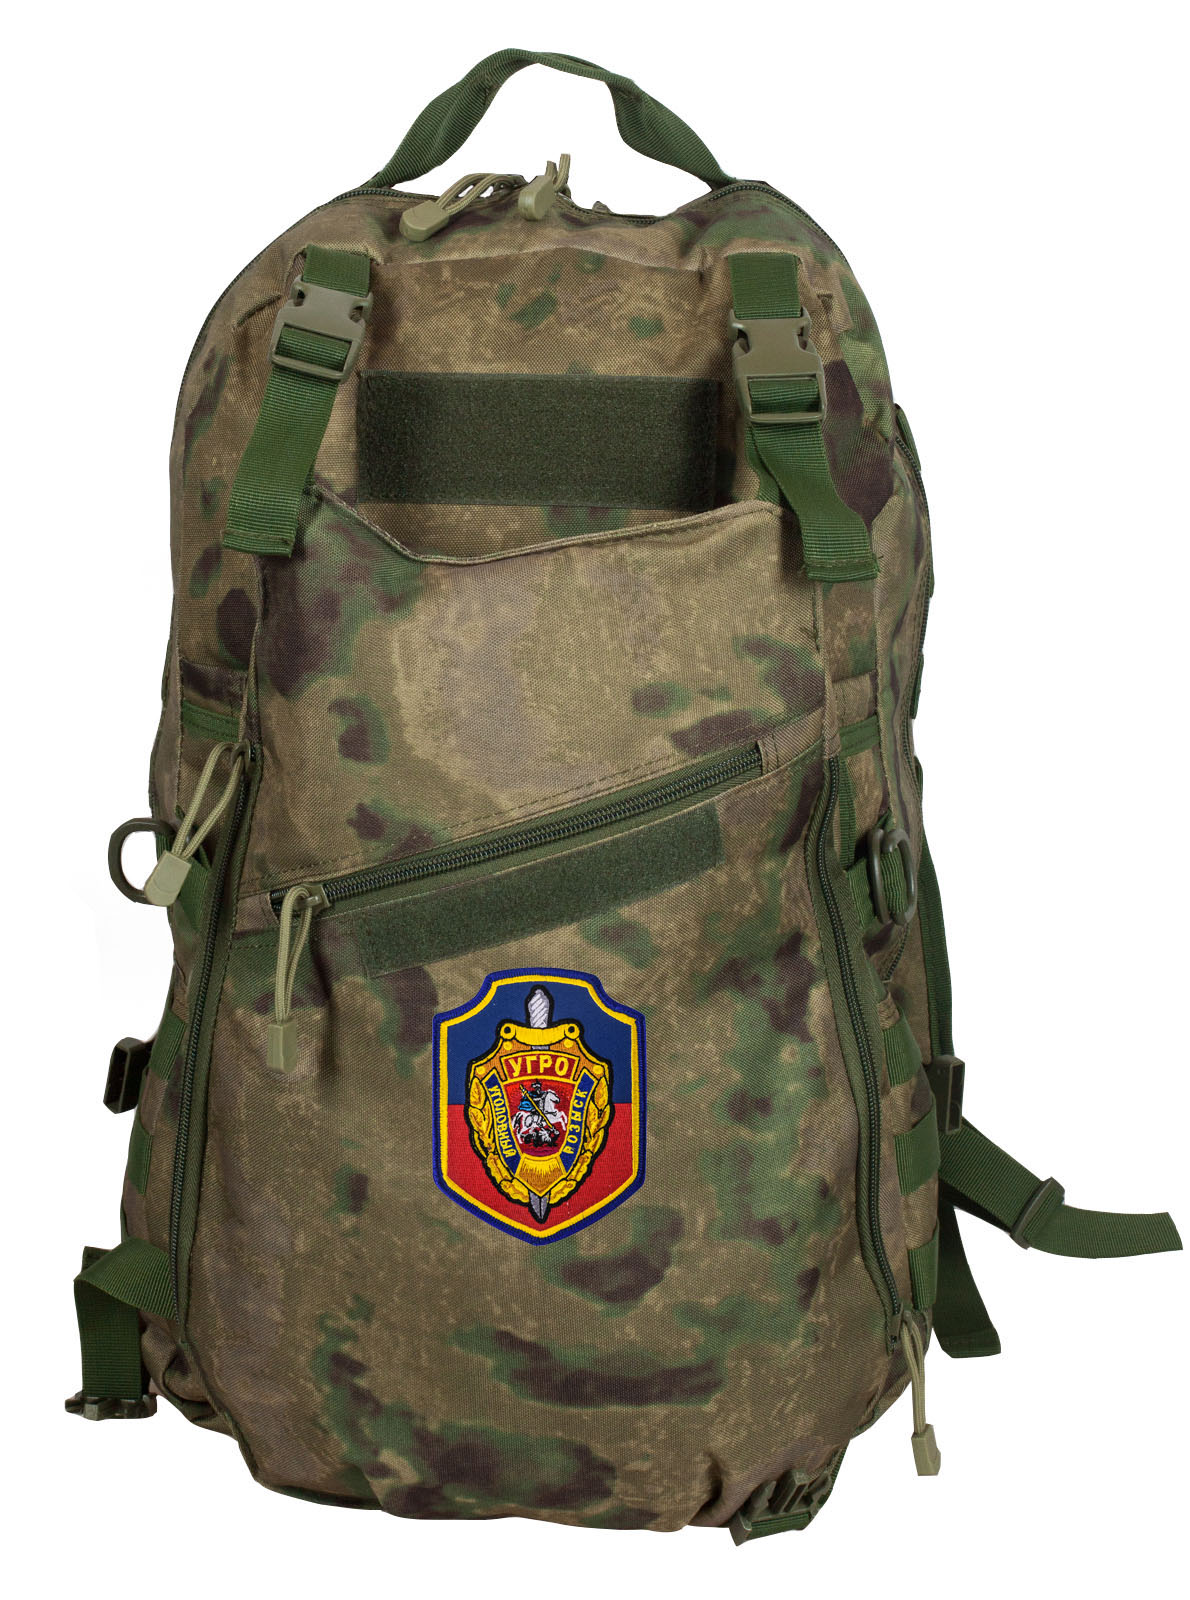 Надежный вместительный рюкзак с нашивкой УГРО 